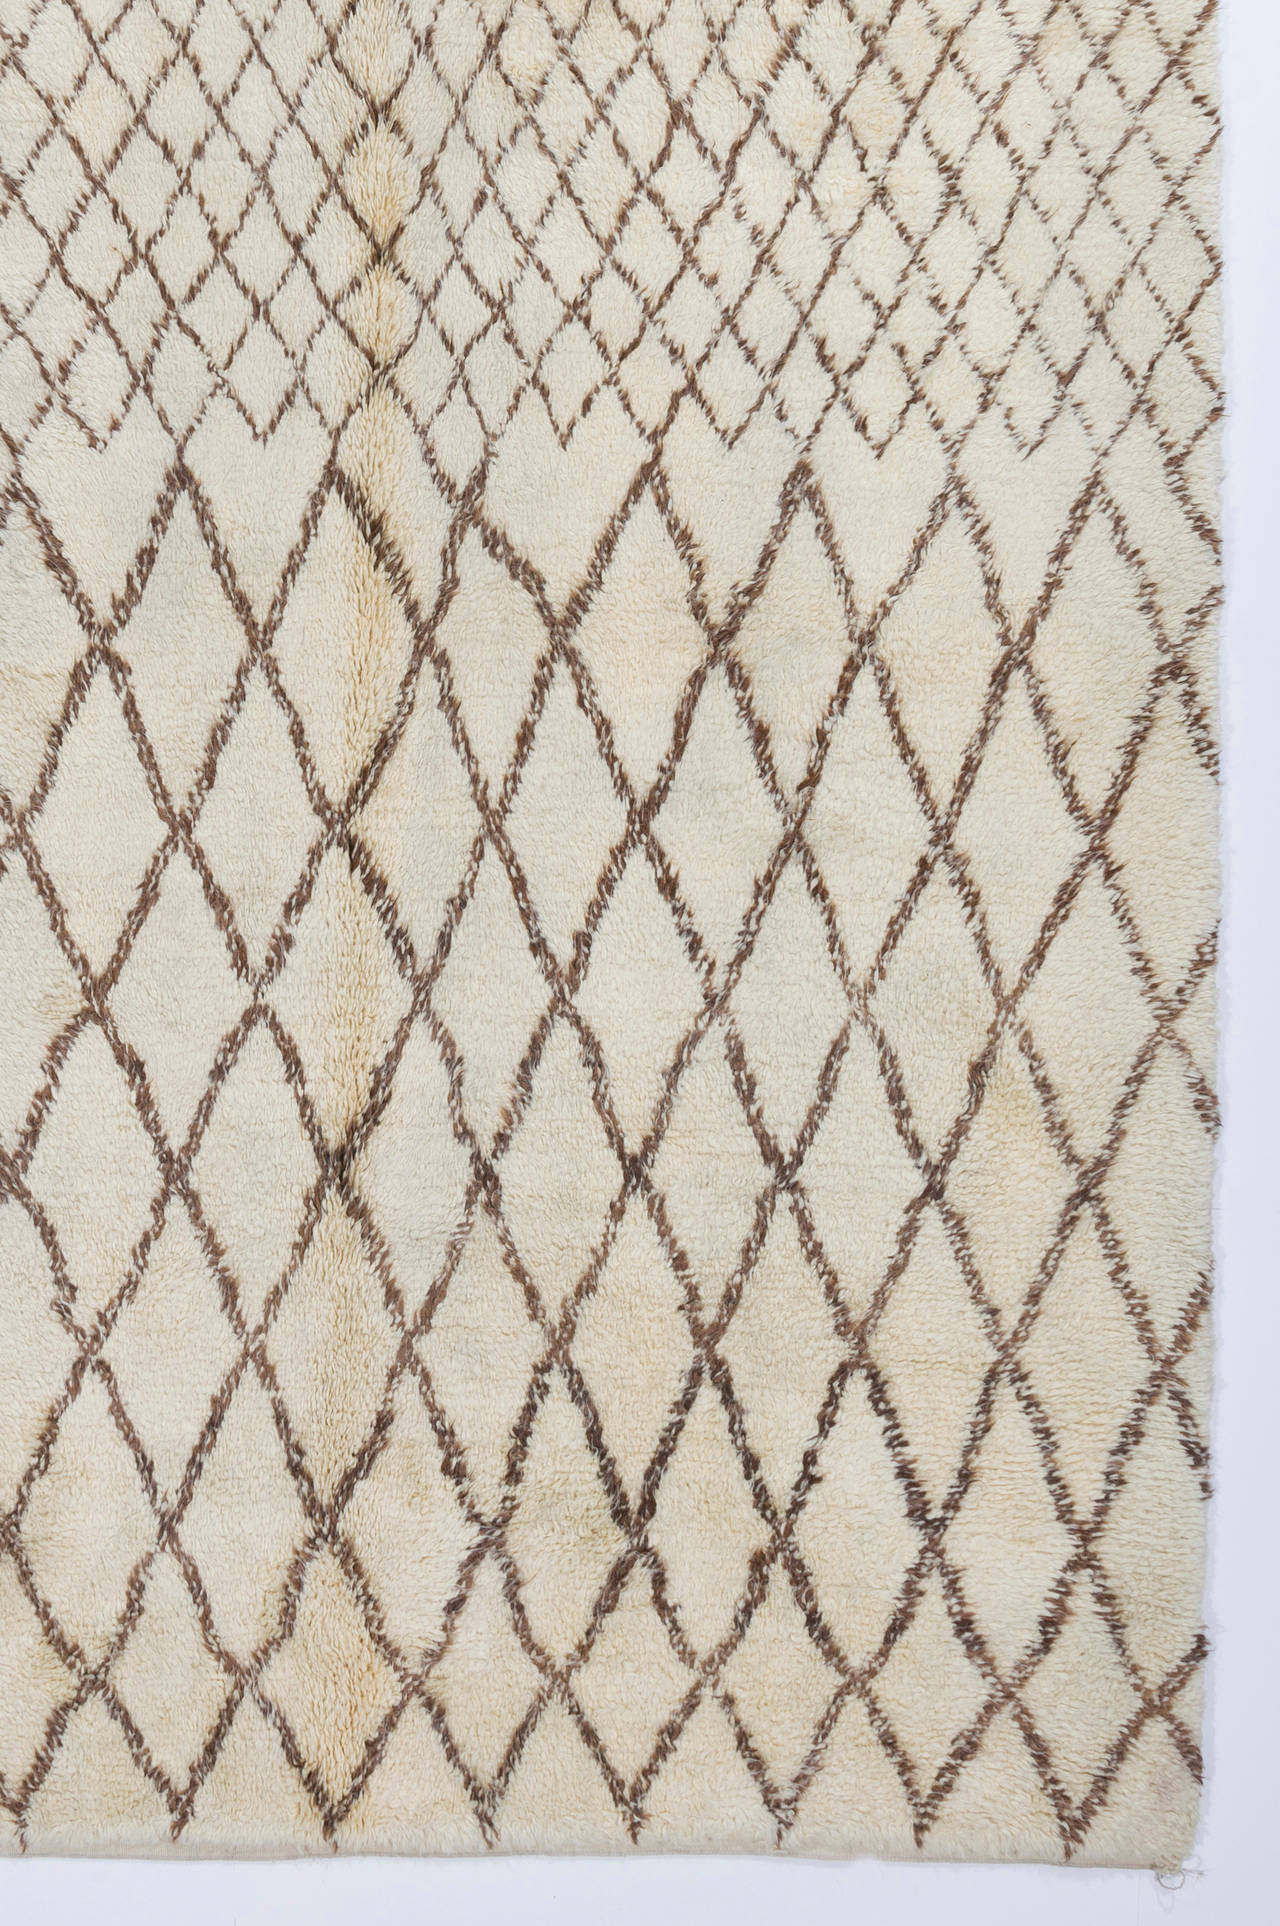 Ein moderner, handgefertigter marokkanischer Teppich mit dickem, weichem Flor aus natürlicher, ungefärbter elfenbeinfarbener/cremefarbener und brauner Wolle.
Sehr weich und bequem, ein Vergnügen, darauf zu gehen oder zu liegen. 
Der Teppich wird auf